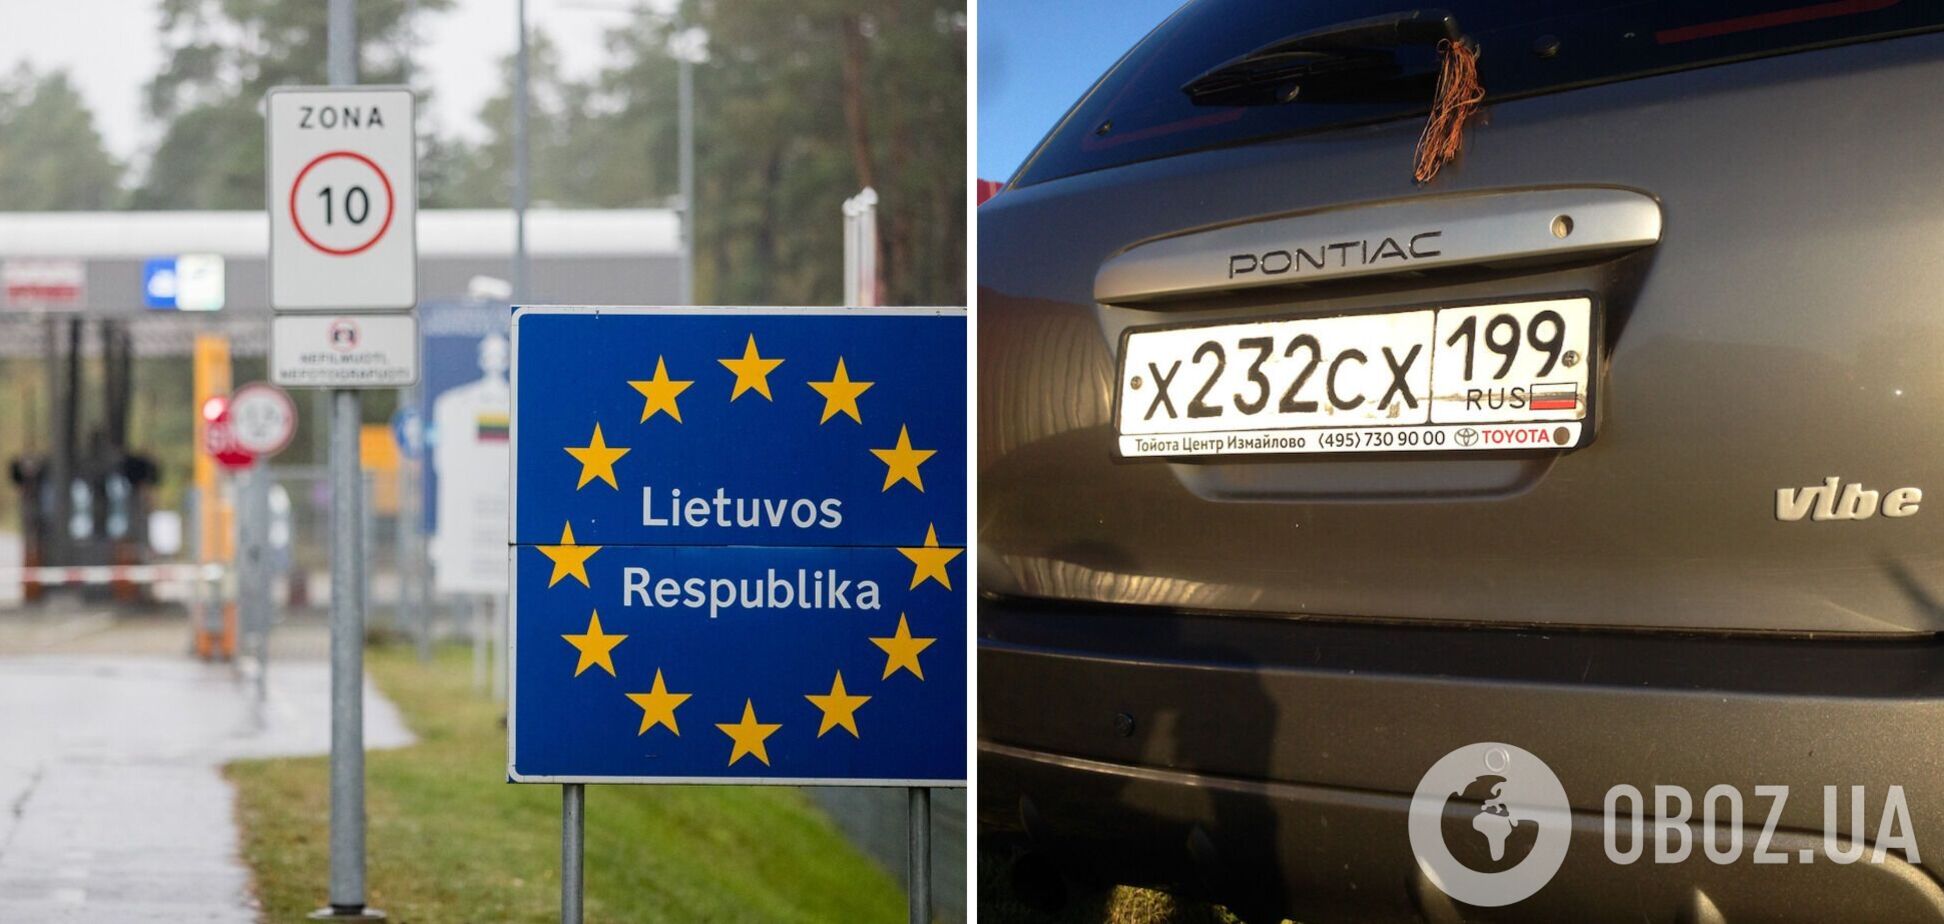 Авто россиян должны покинуть Литву